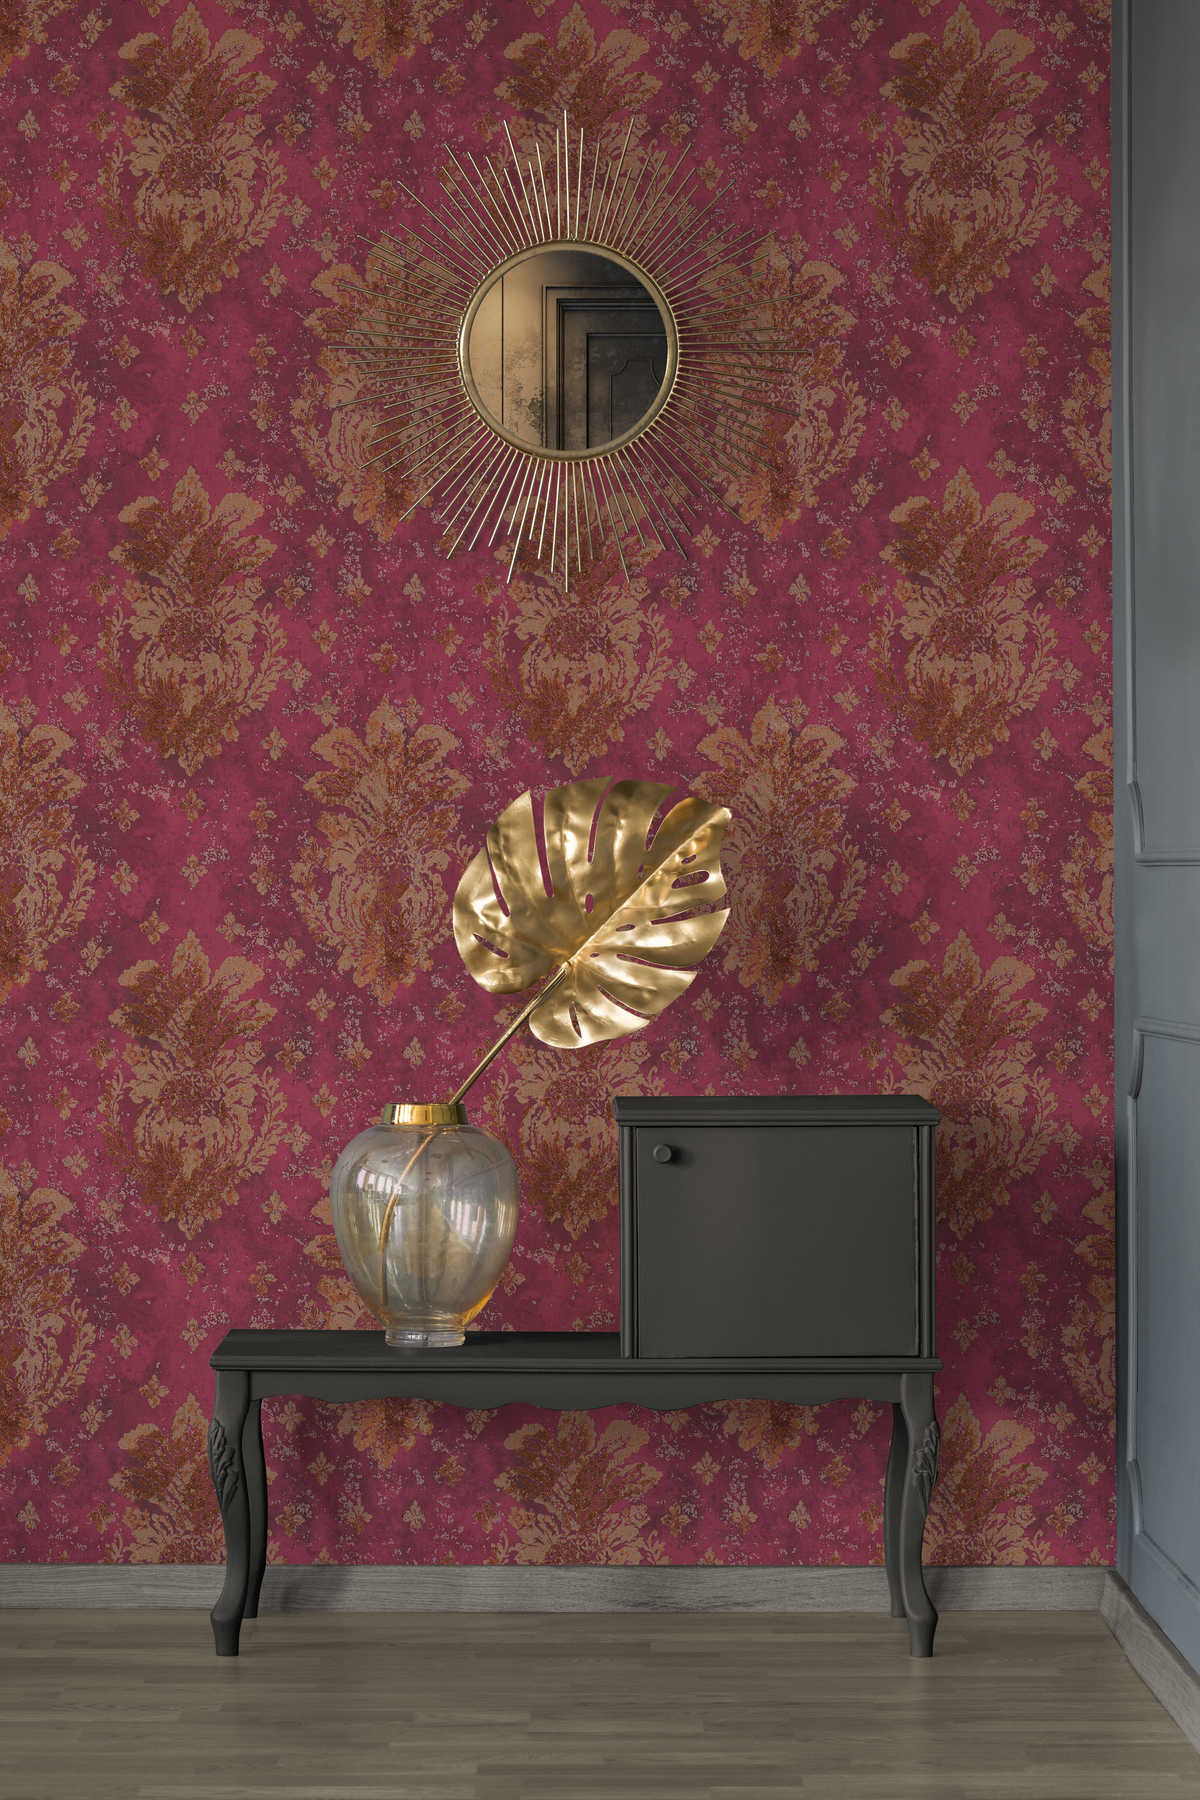             Wijnrood behang met Boho stijl ornamenten - metallic, rood
        